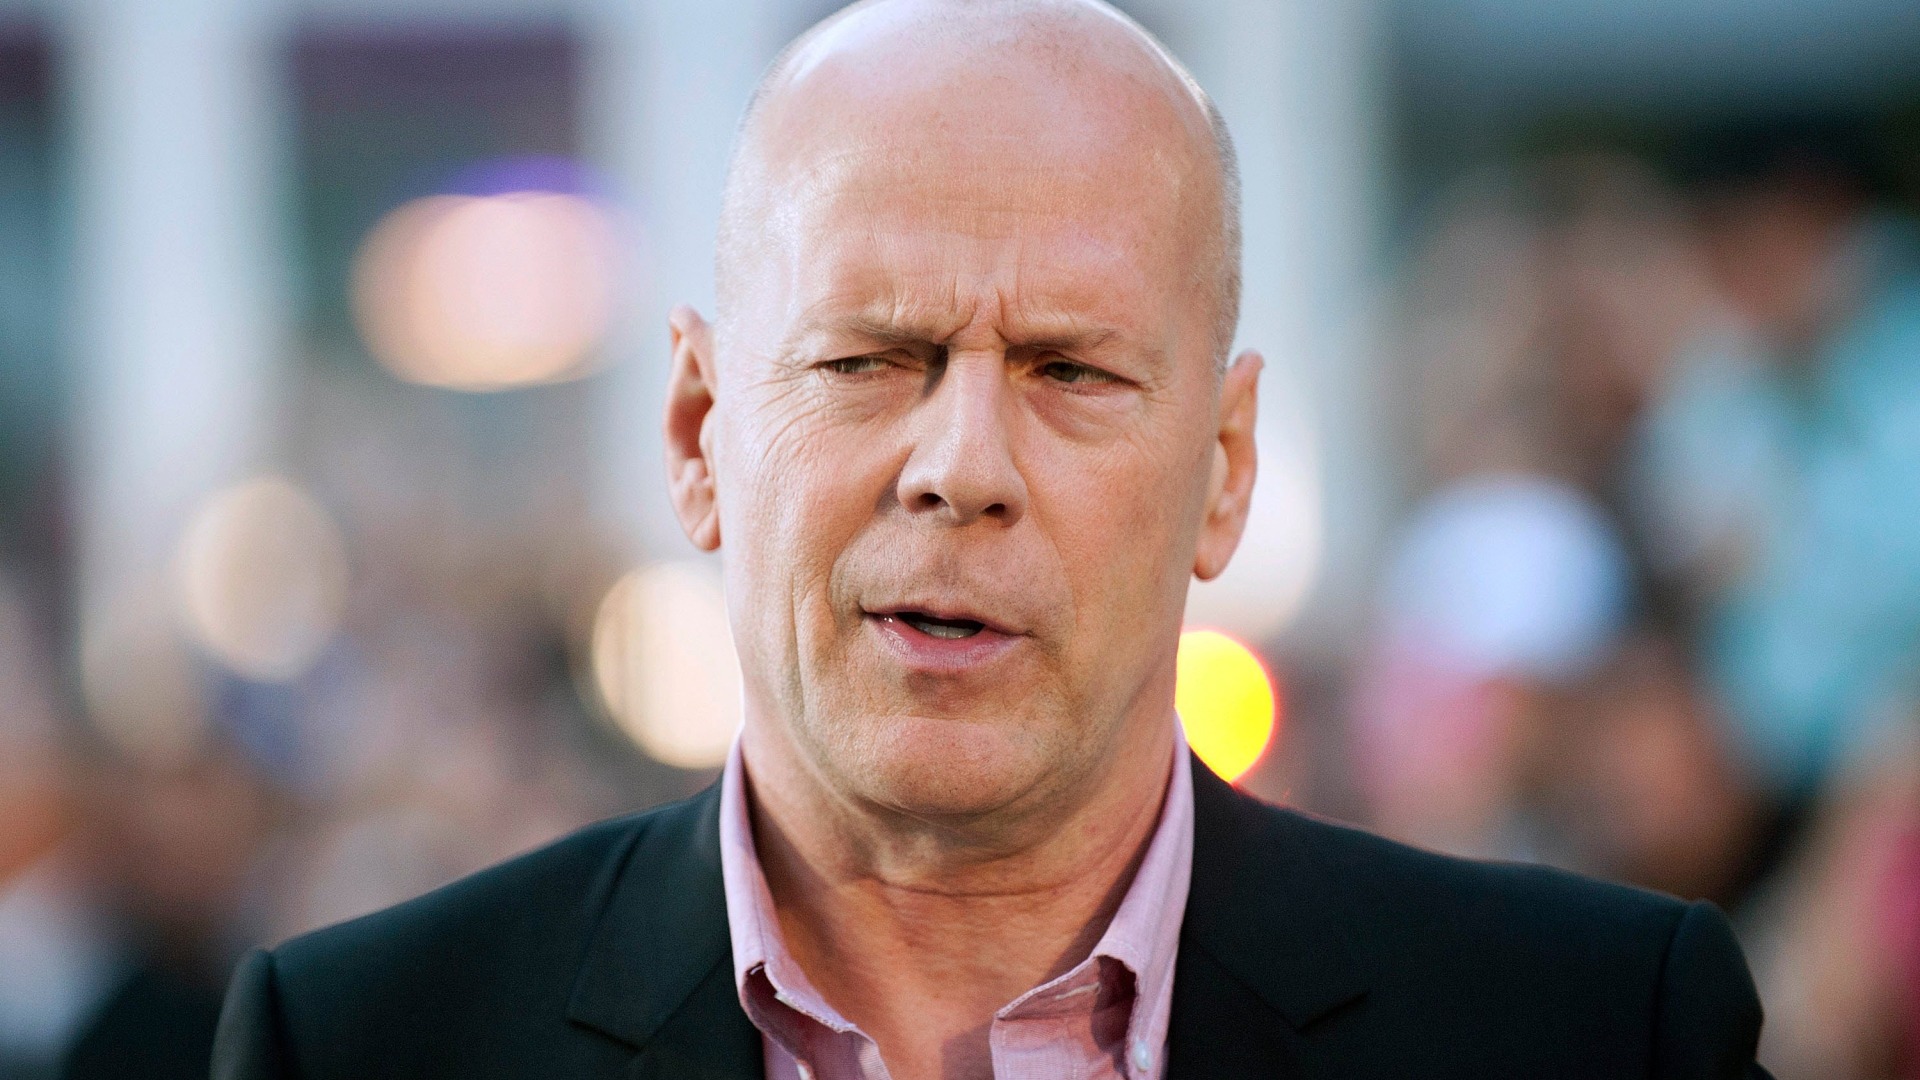 Bruce Willis’e verilecek ödül iptal edildi